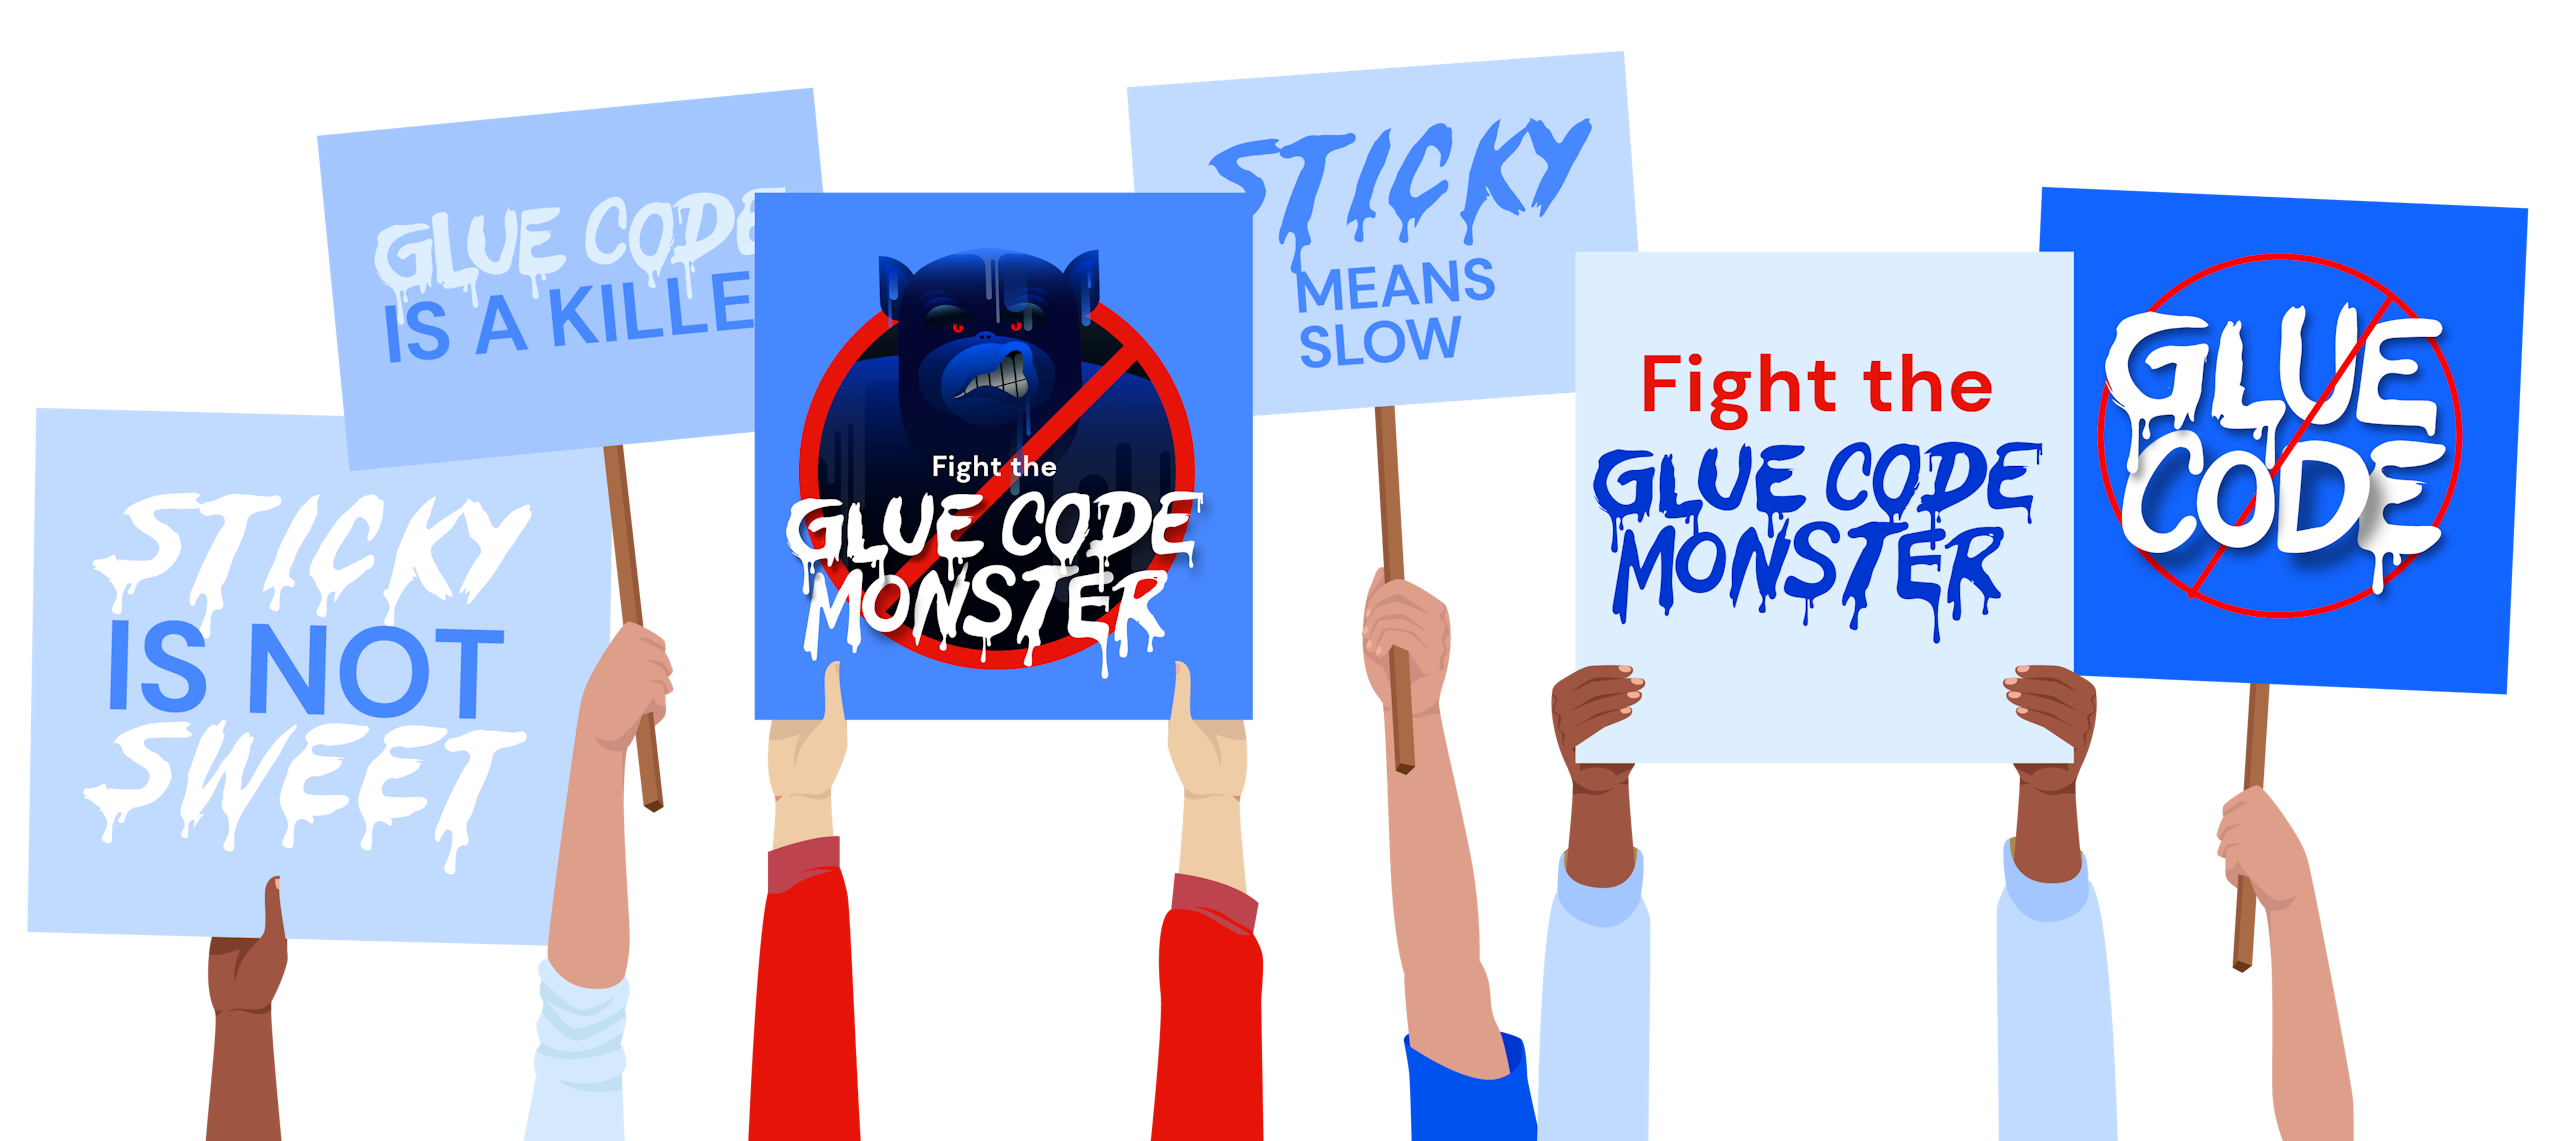 GlueCode PROTEST